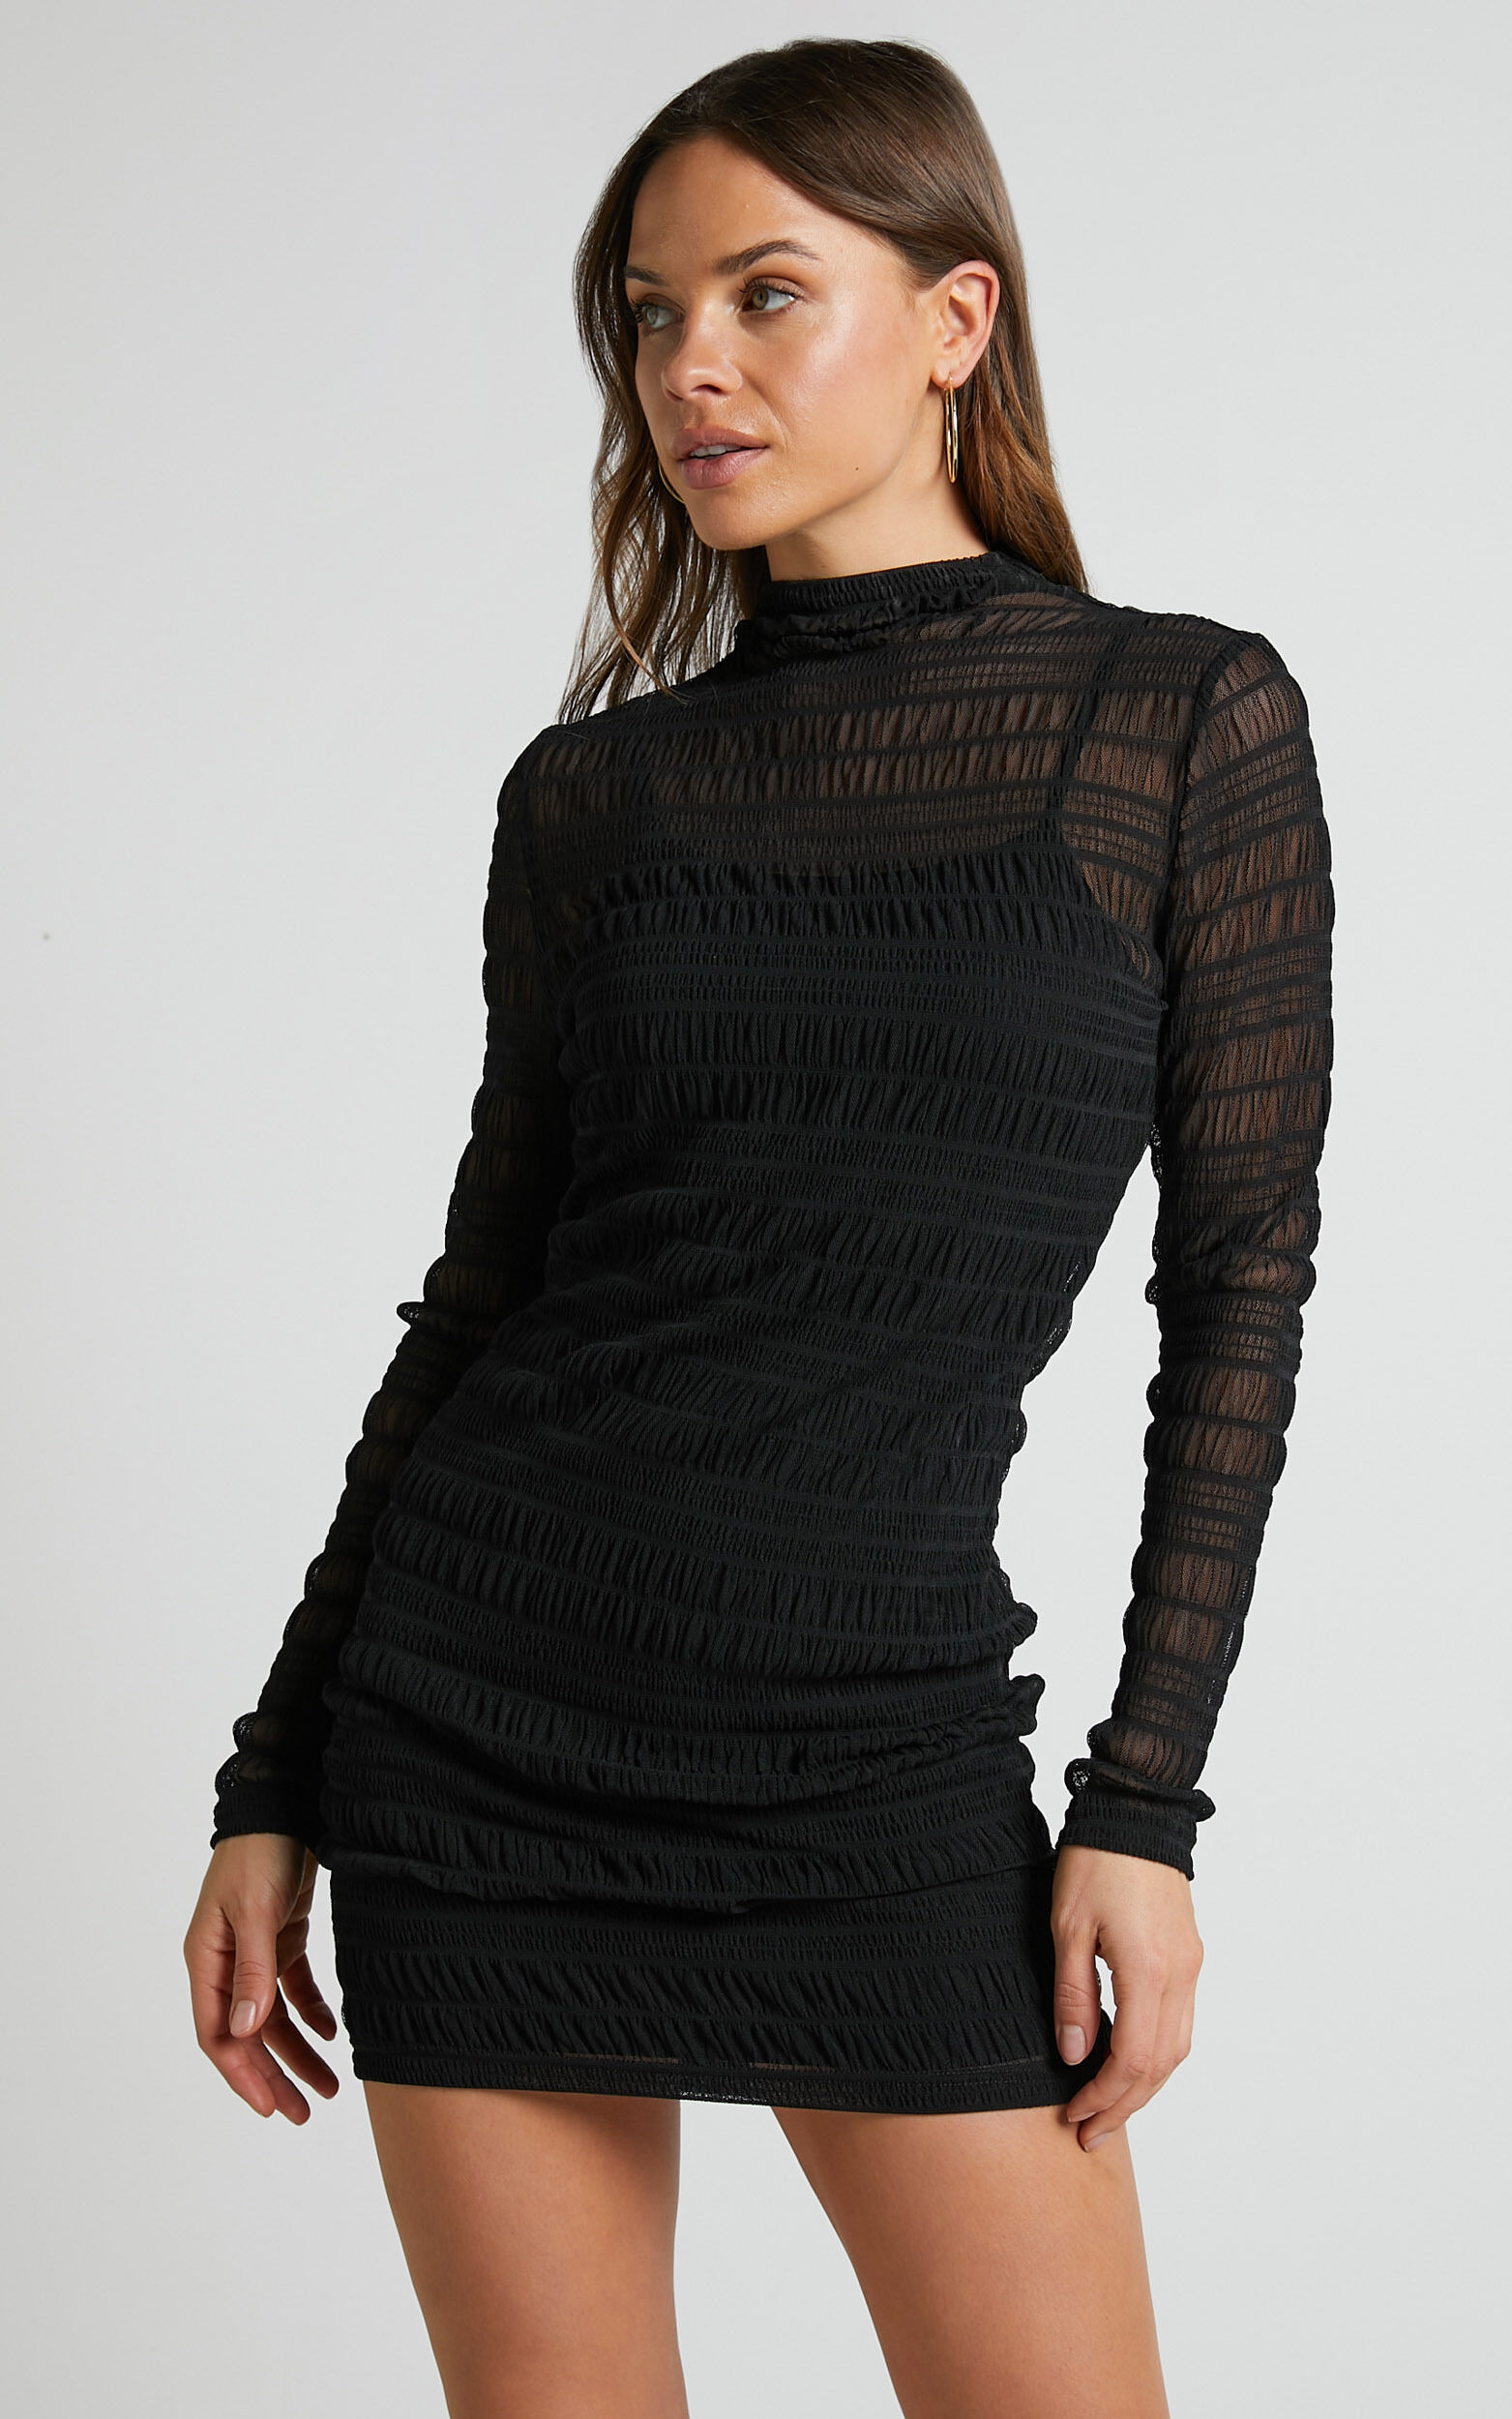 Rhialyn Mini Dress - Long Sleeve Sheer Dress in Black - 16, BLK1